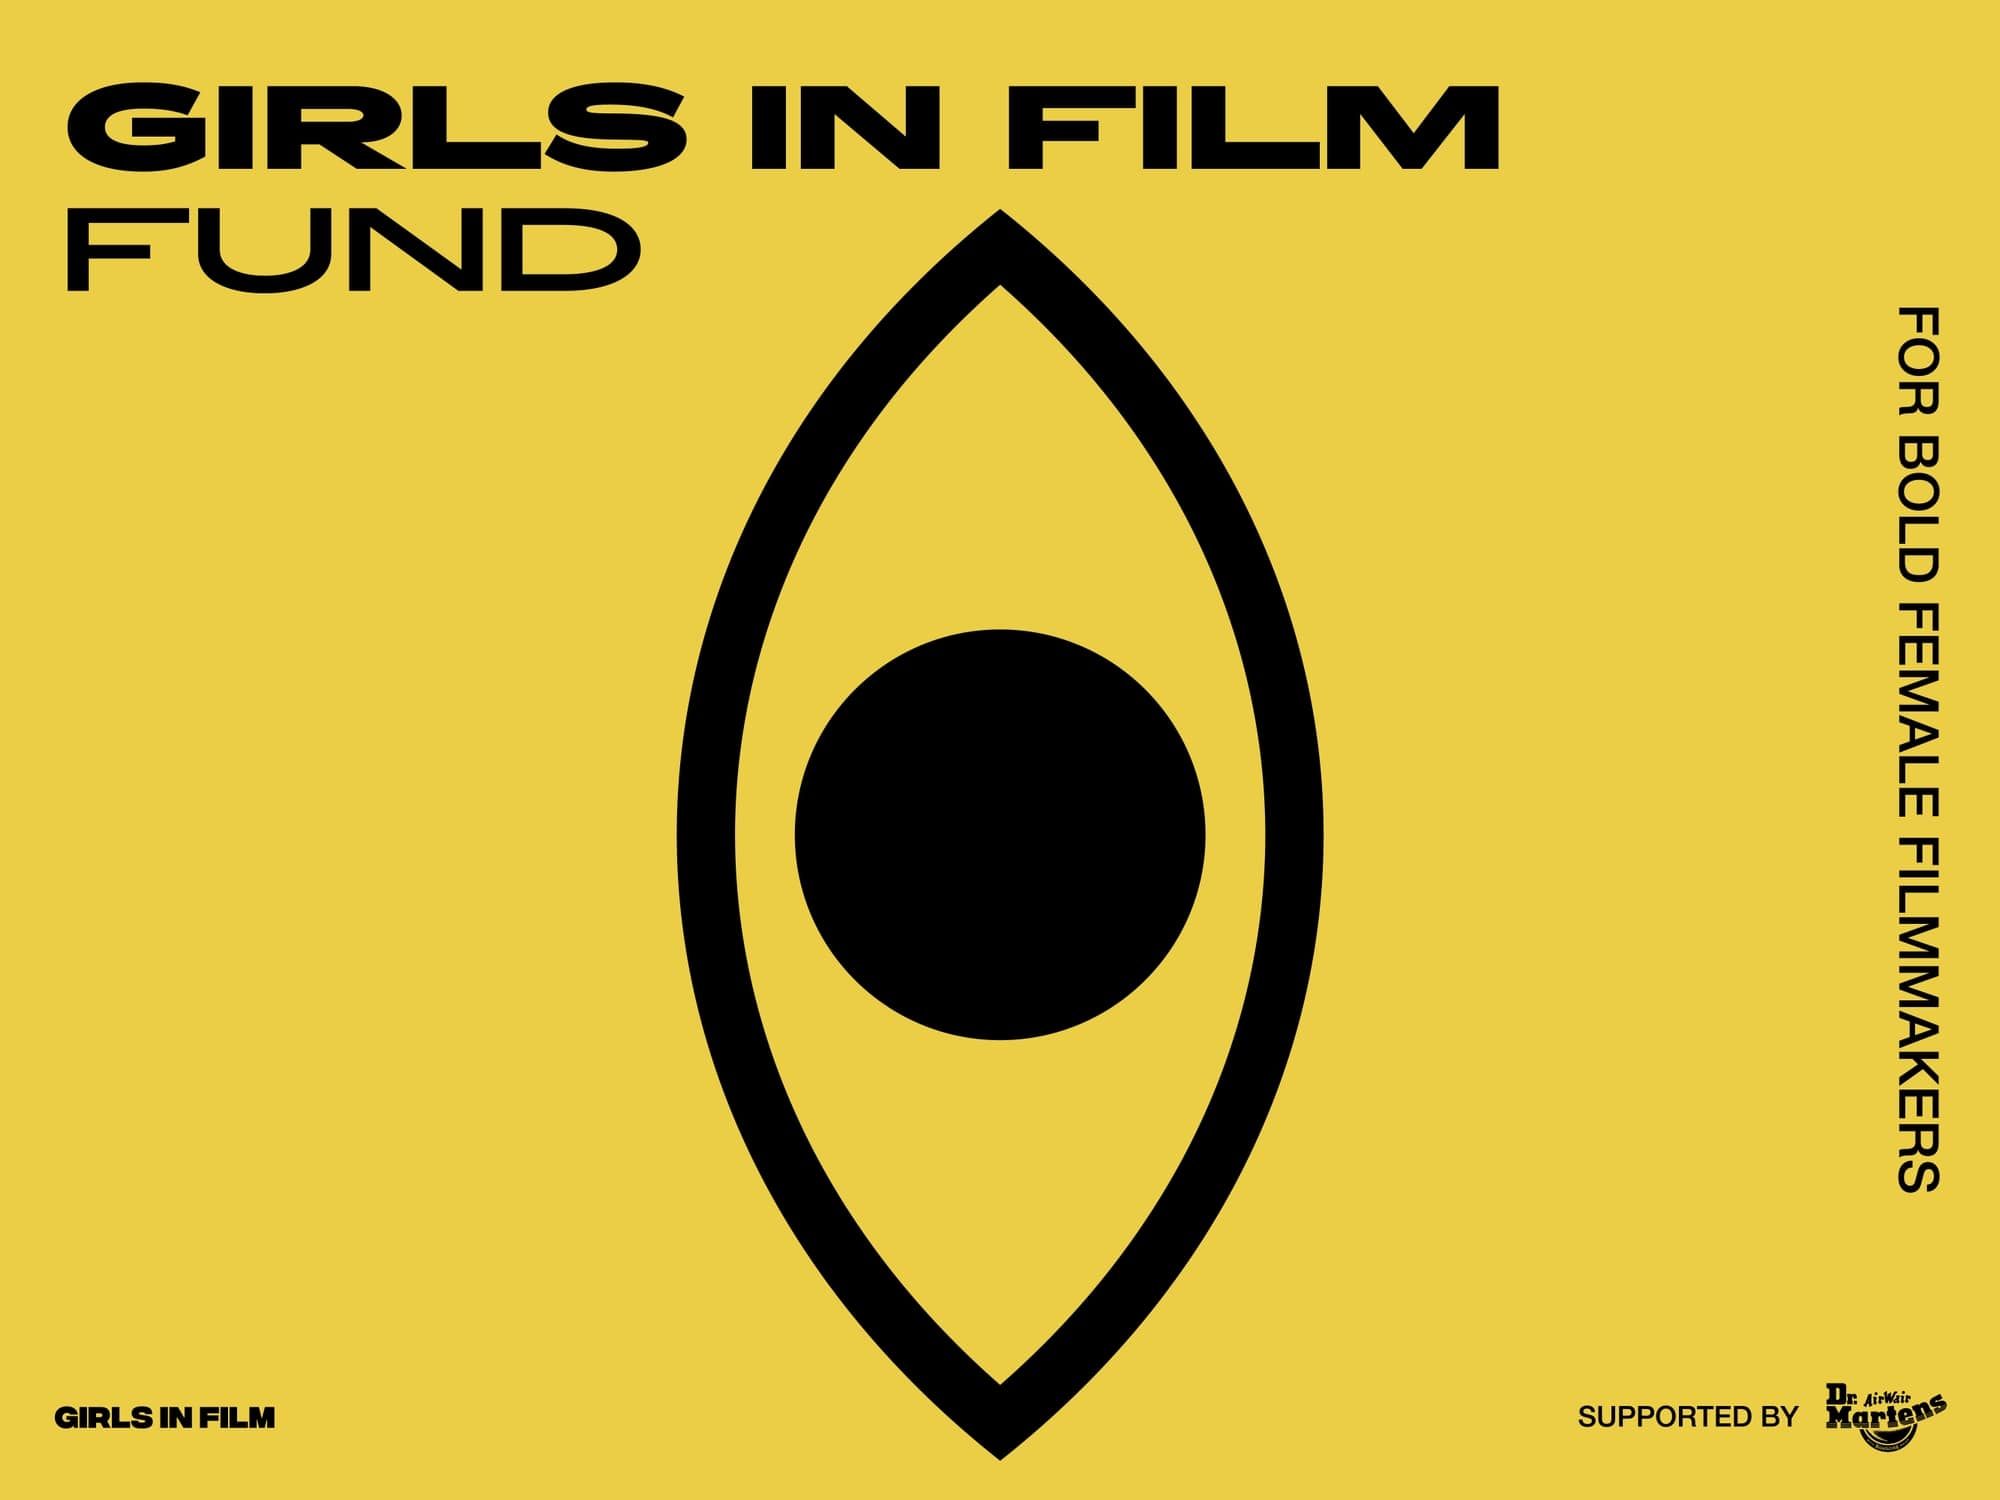 Girls in Film Fund